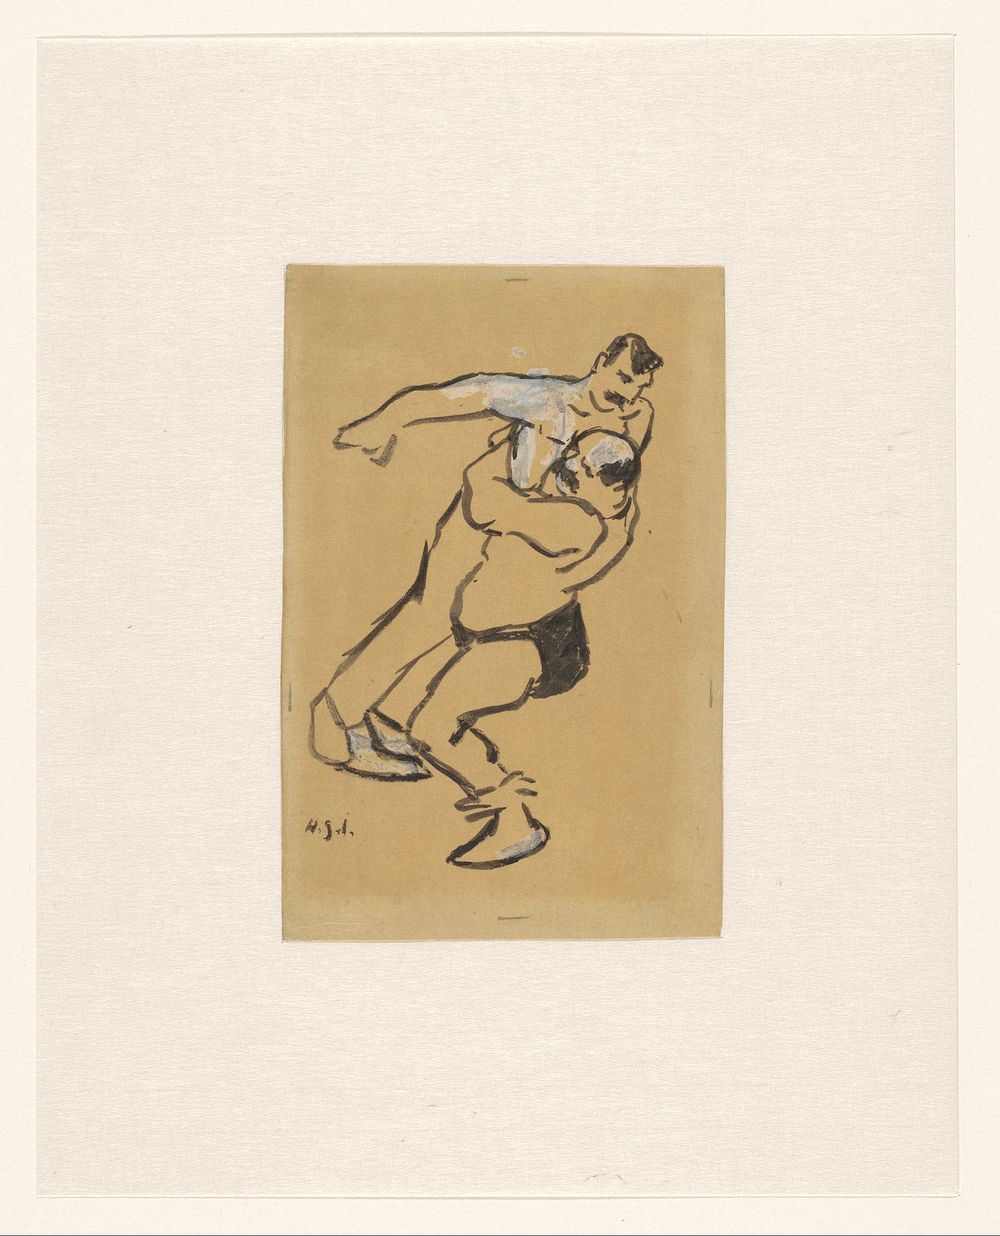 Twee worstelaars, van wie de een de ander optilt (c. 1877 - 1936) by Henri Gabriel Ibels